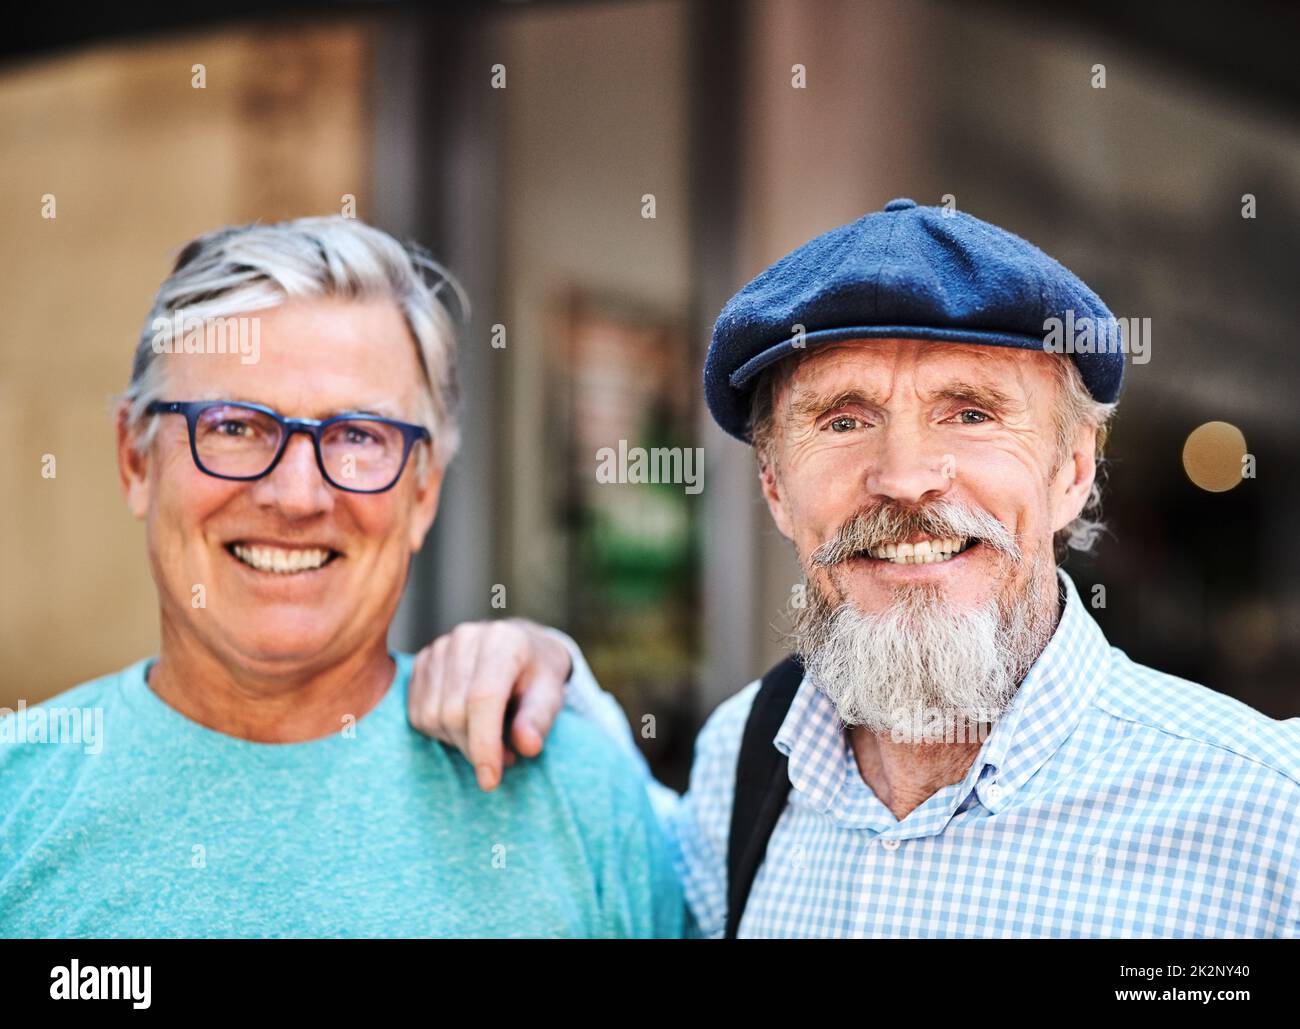 La vraie amitié ne s'améliore qu'avec l'âge. Portrait de deux amis âgés se posant ensemble à l'extérieur de leur café préféré. Banque D'Images